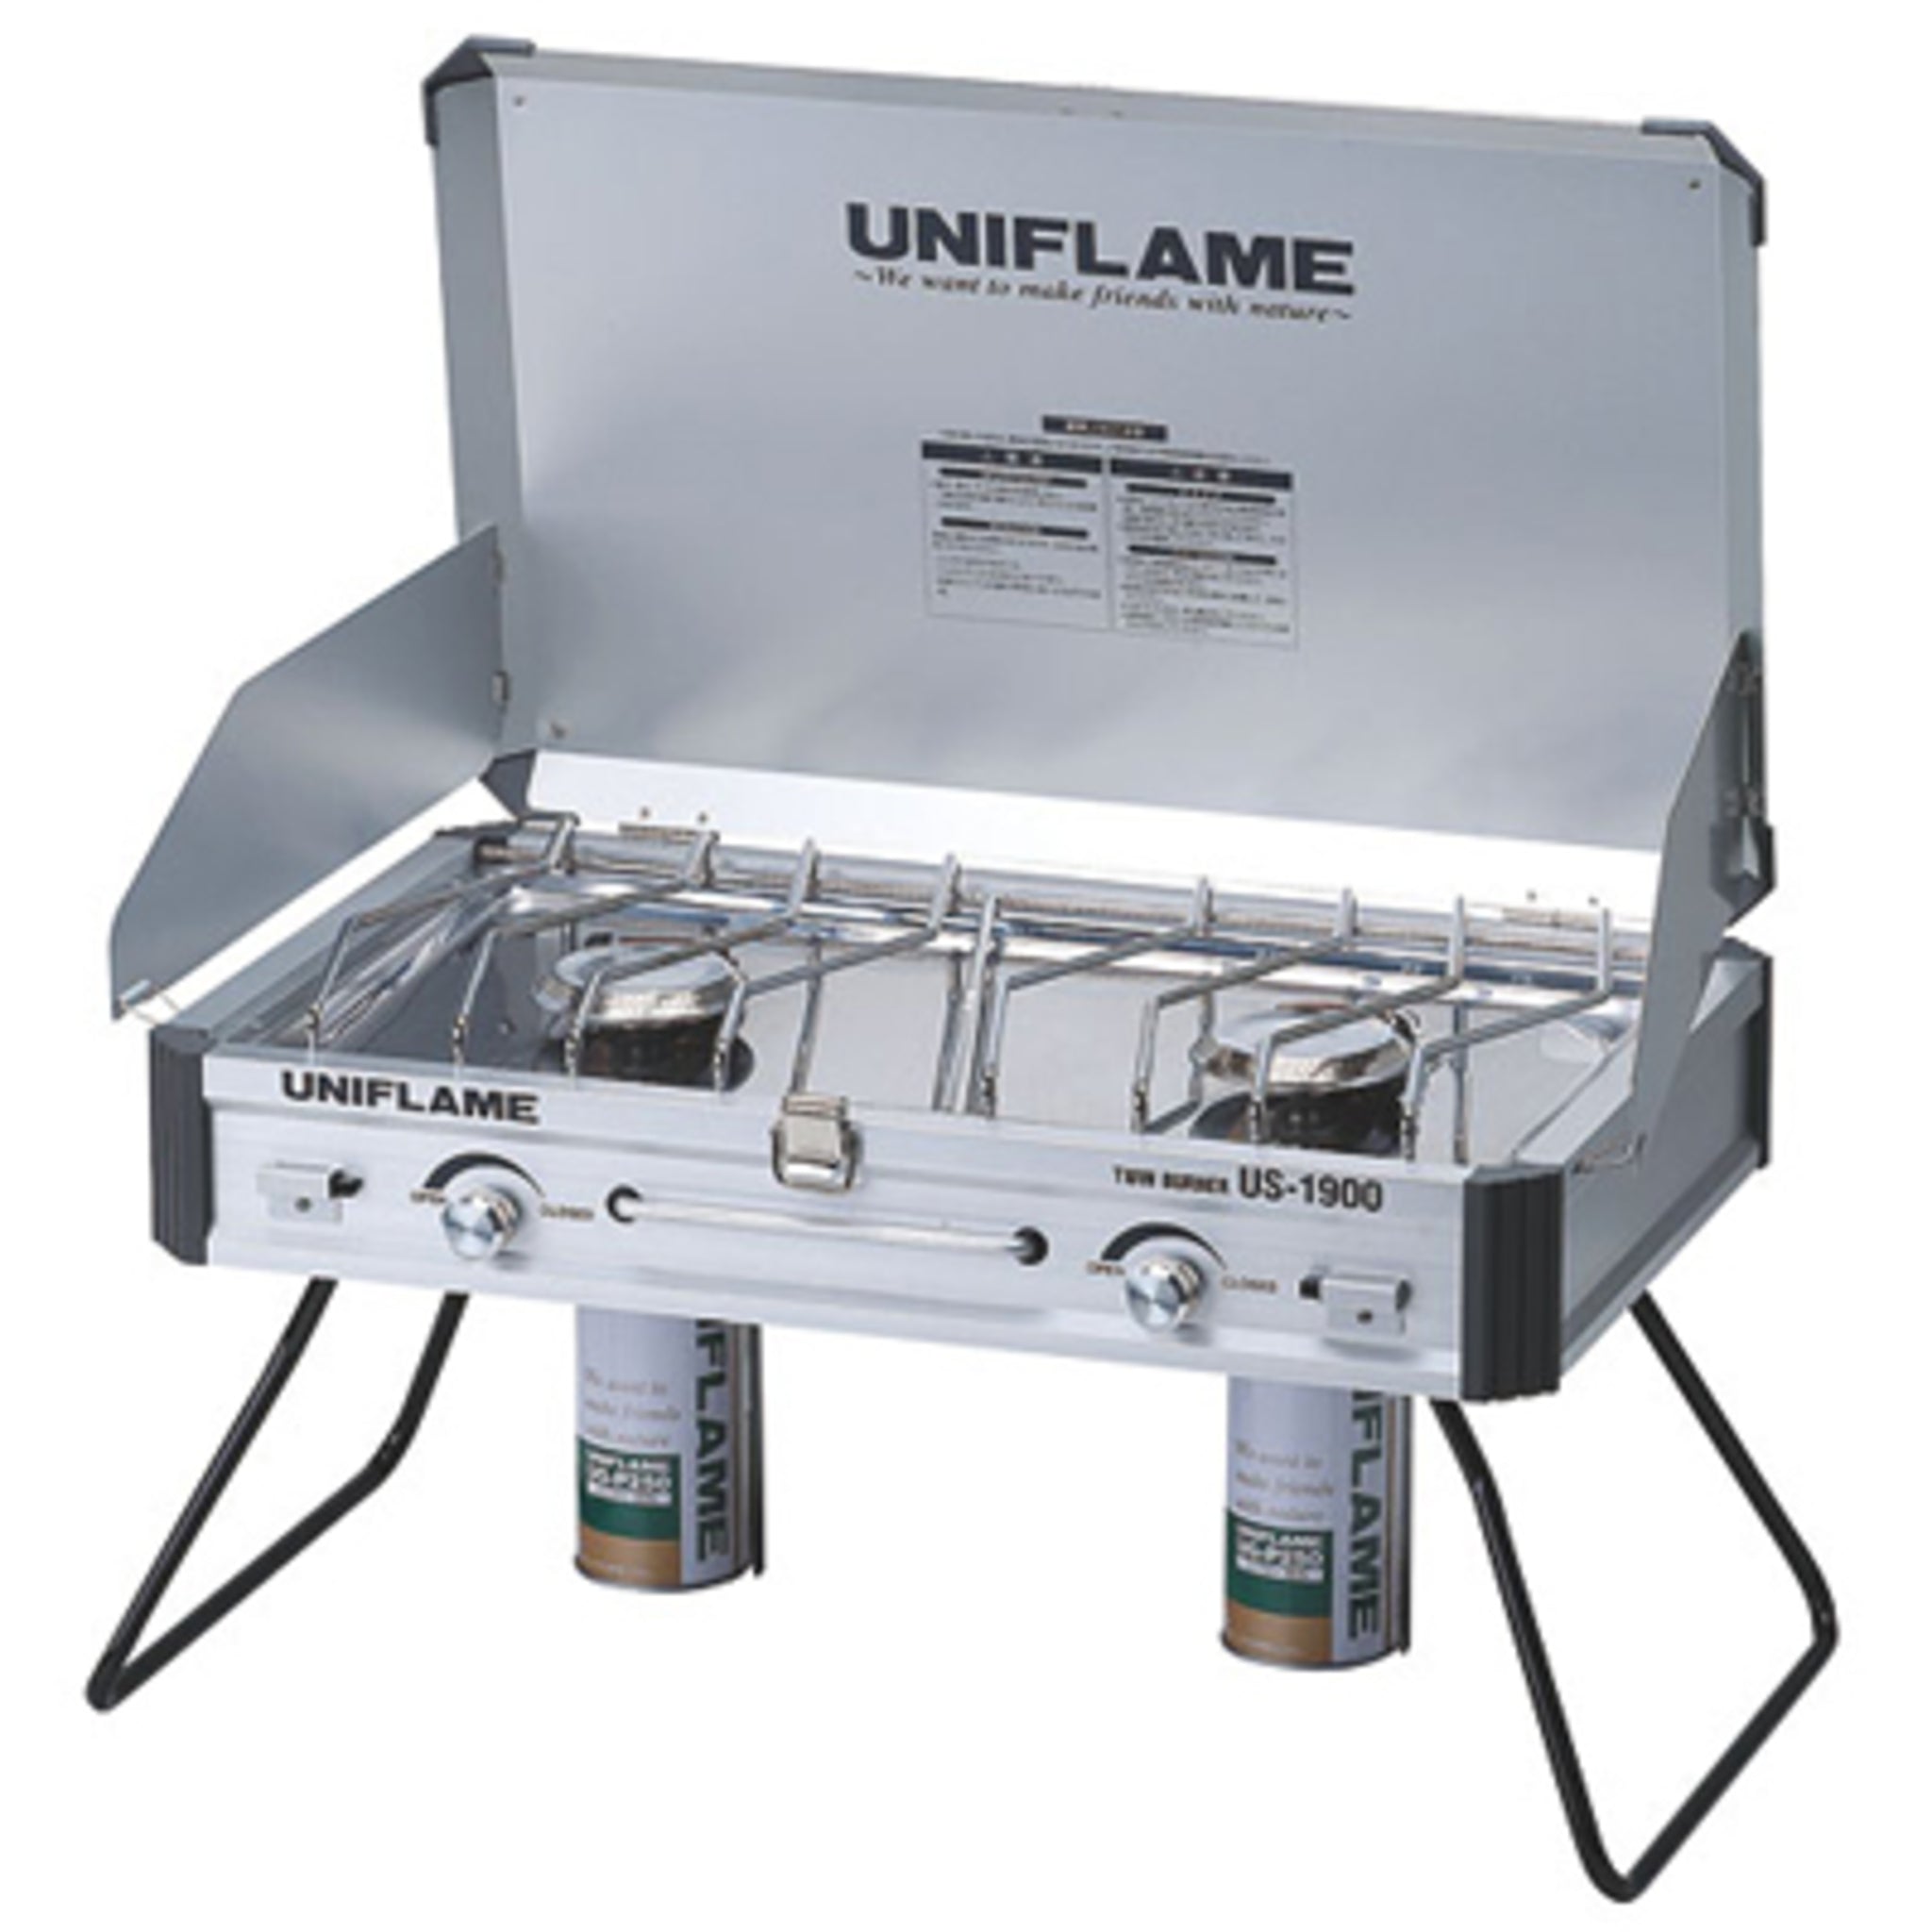 UNIFLAME US-1900 行動廚房瓦斯爐 不鏽鋼瓦斯雙口爐 610305